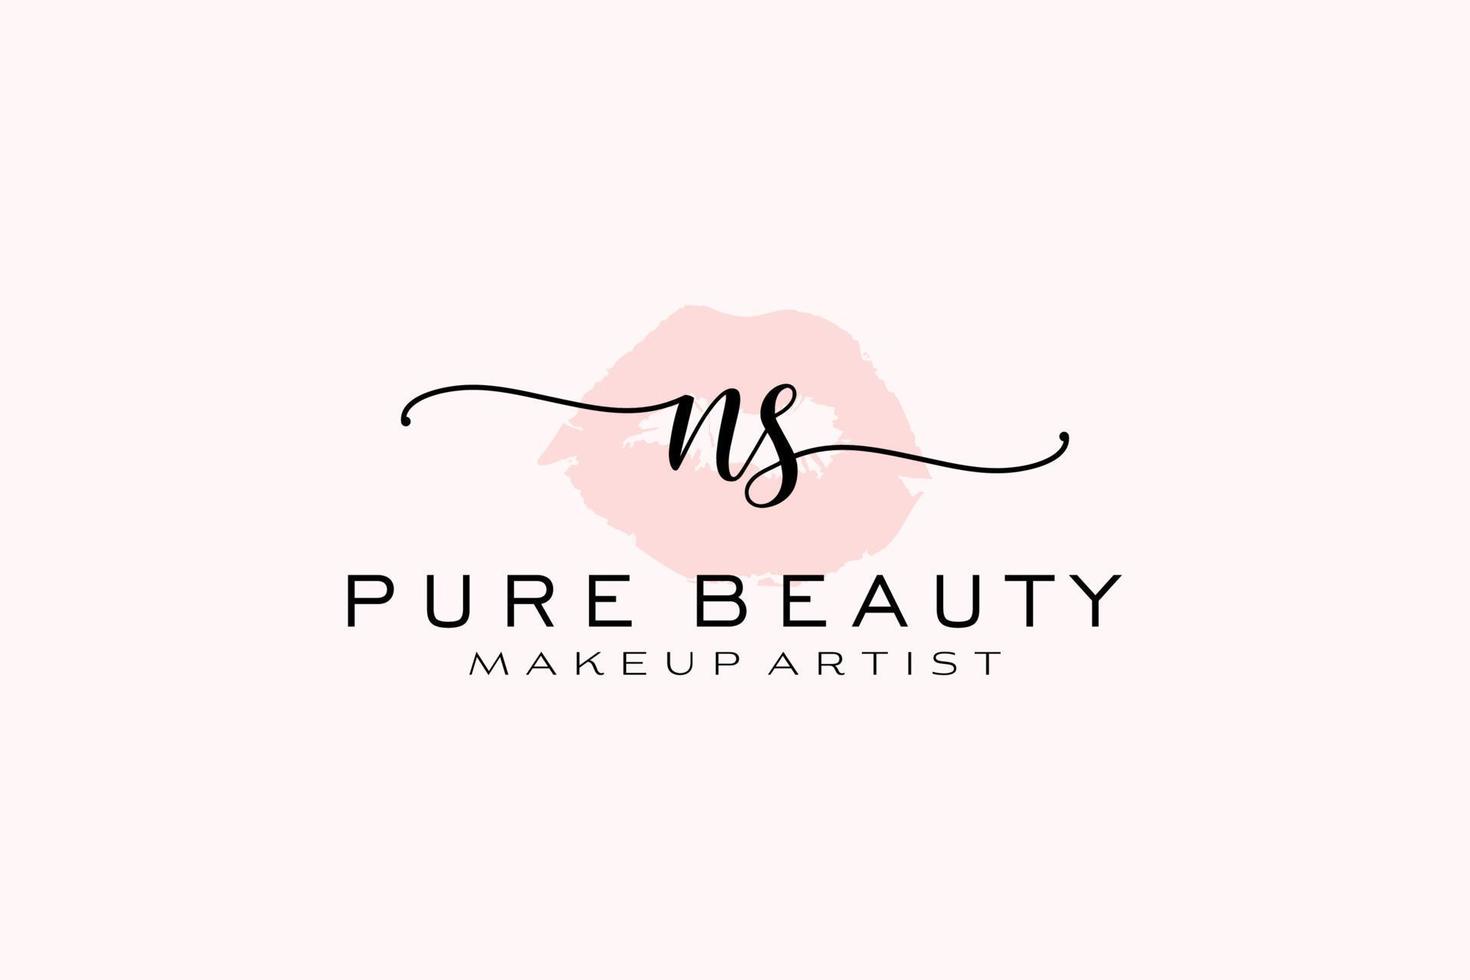 création initiale de logo préfabriqué pour les lèvres aquarelles ns, logo pour la marque d'entreprise de maquilleur, création de logo de boutique de beauté blush, logo de calligraphie avec modèle créatif. vecteur